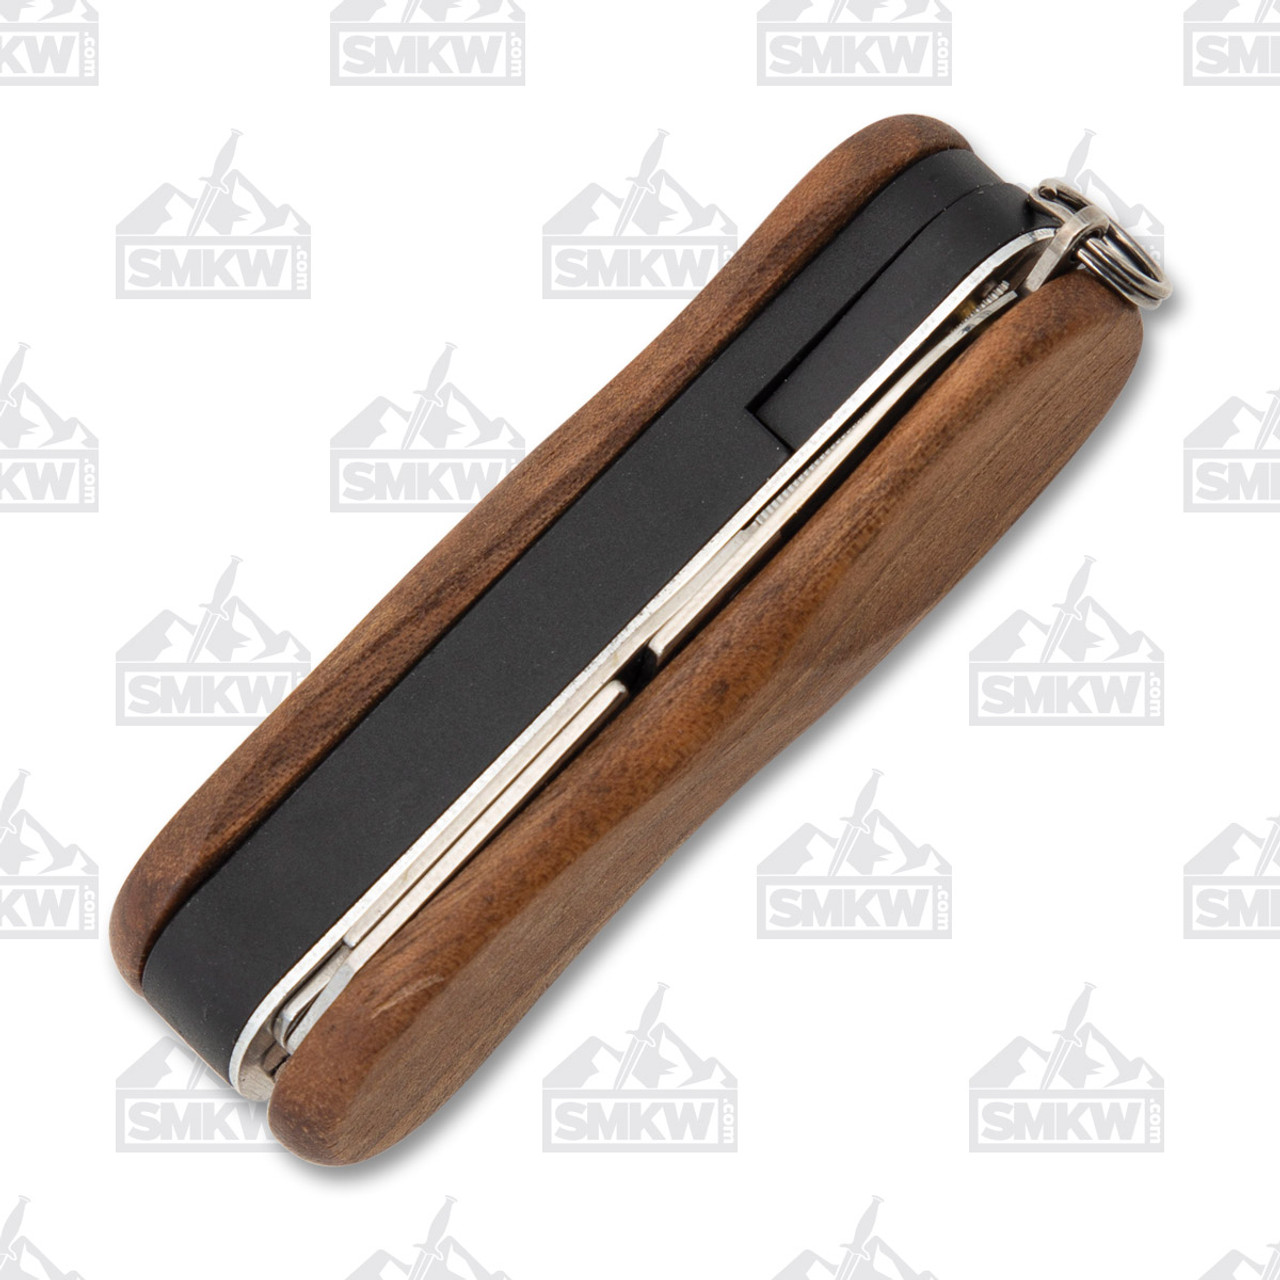 Victorinox Swiss Army Nail Clip 580 Walnut Wood Scales 0.6461.63